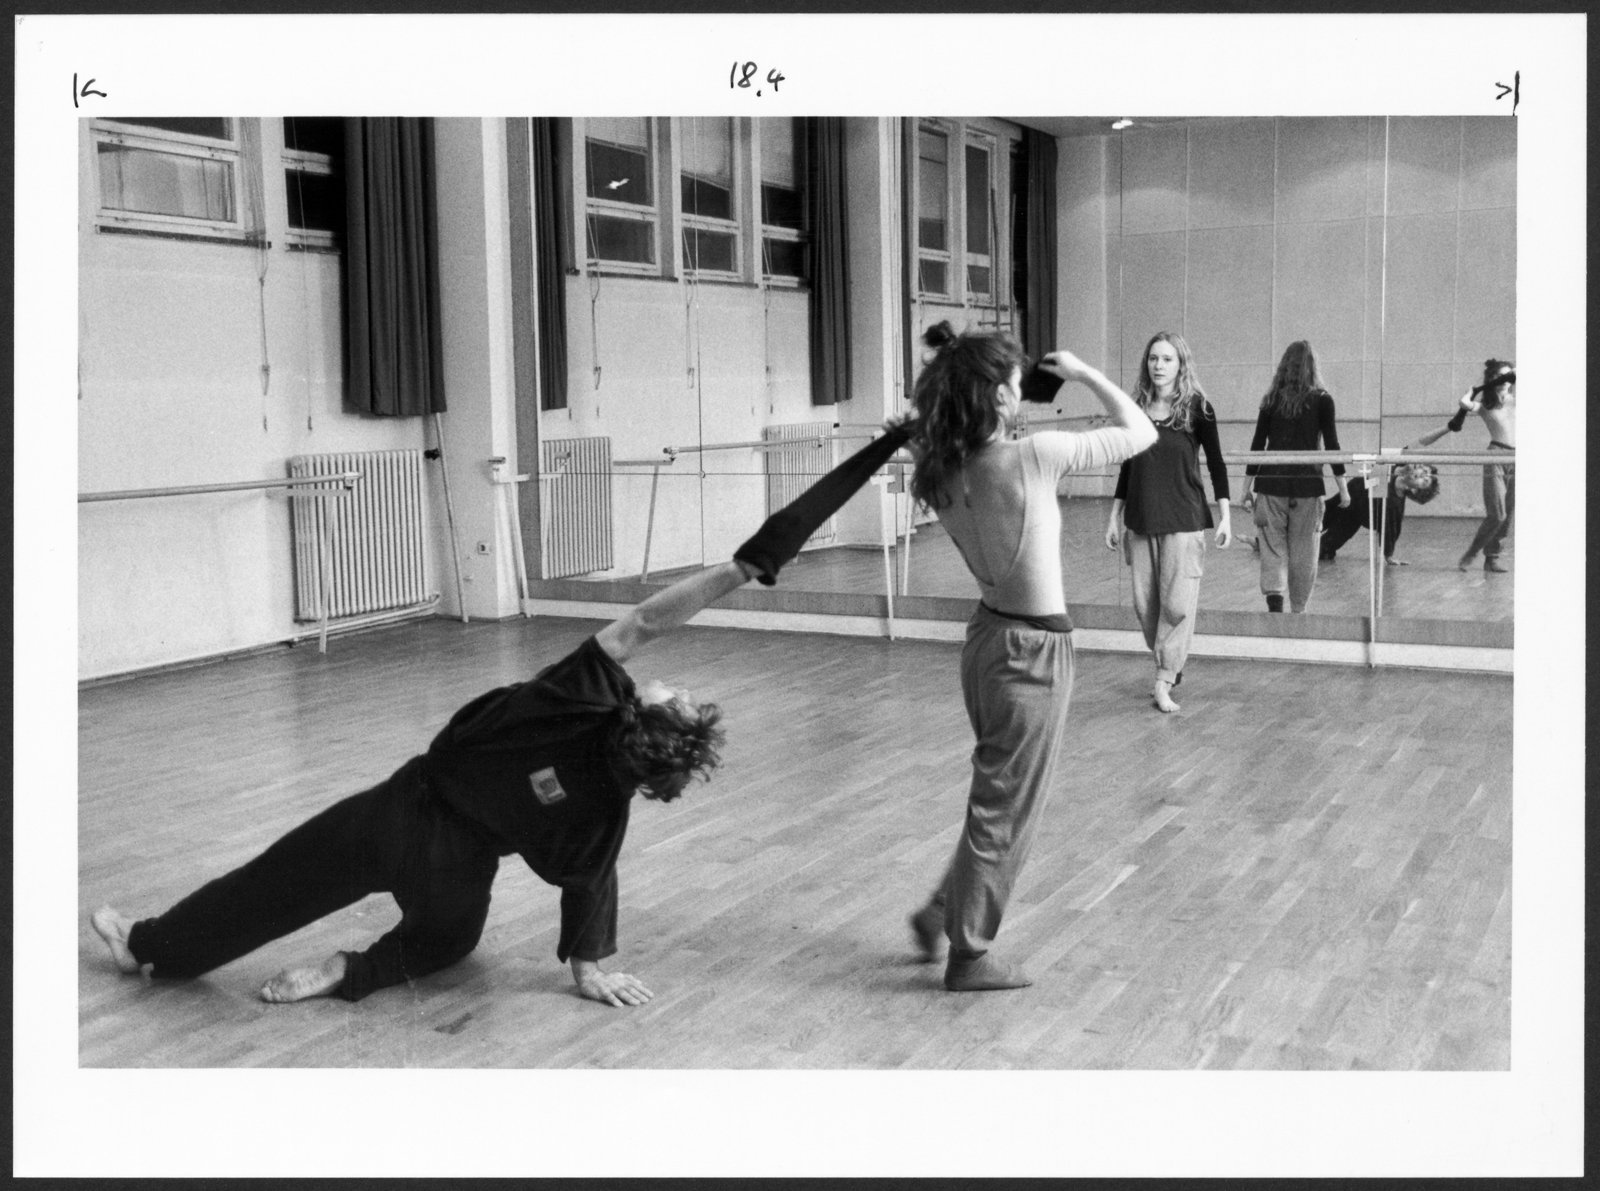 Bild aus dem Choreographie-Unterricht an der Hochschule für Schauspielkunst Ernst Busch (Hochschule für Schauspielkunst Ernst Busch Berlin RR-F)